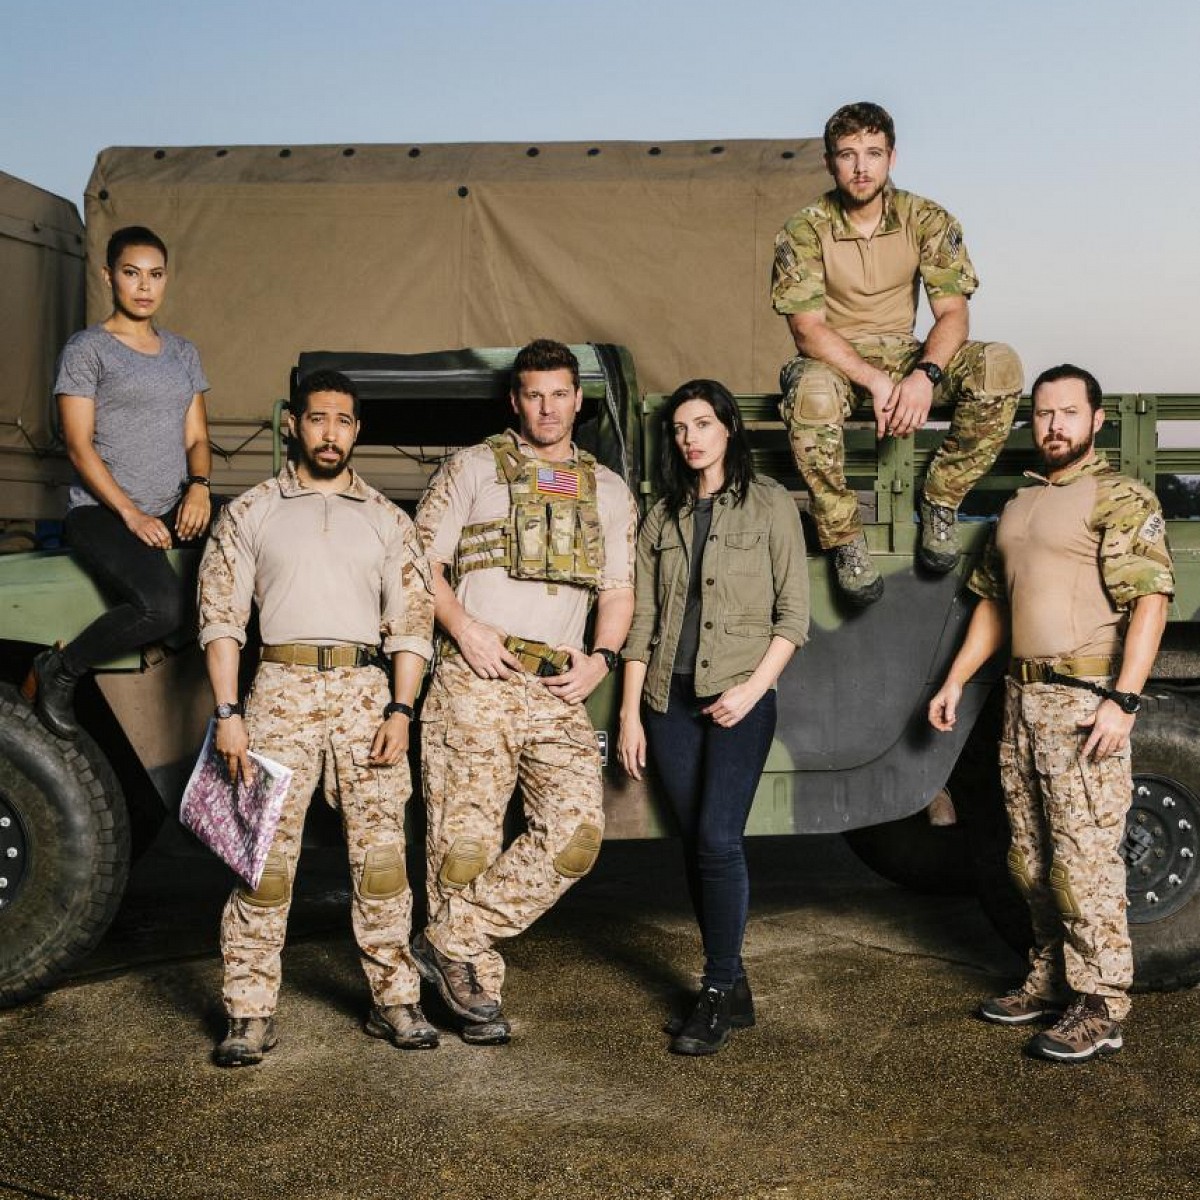 Neue DavidBoreanazSerie "SEAL Team" erhält volle erste Staffel